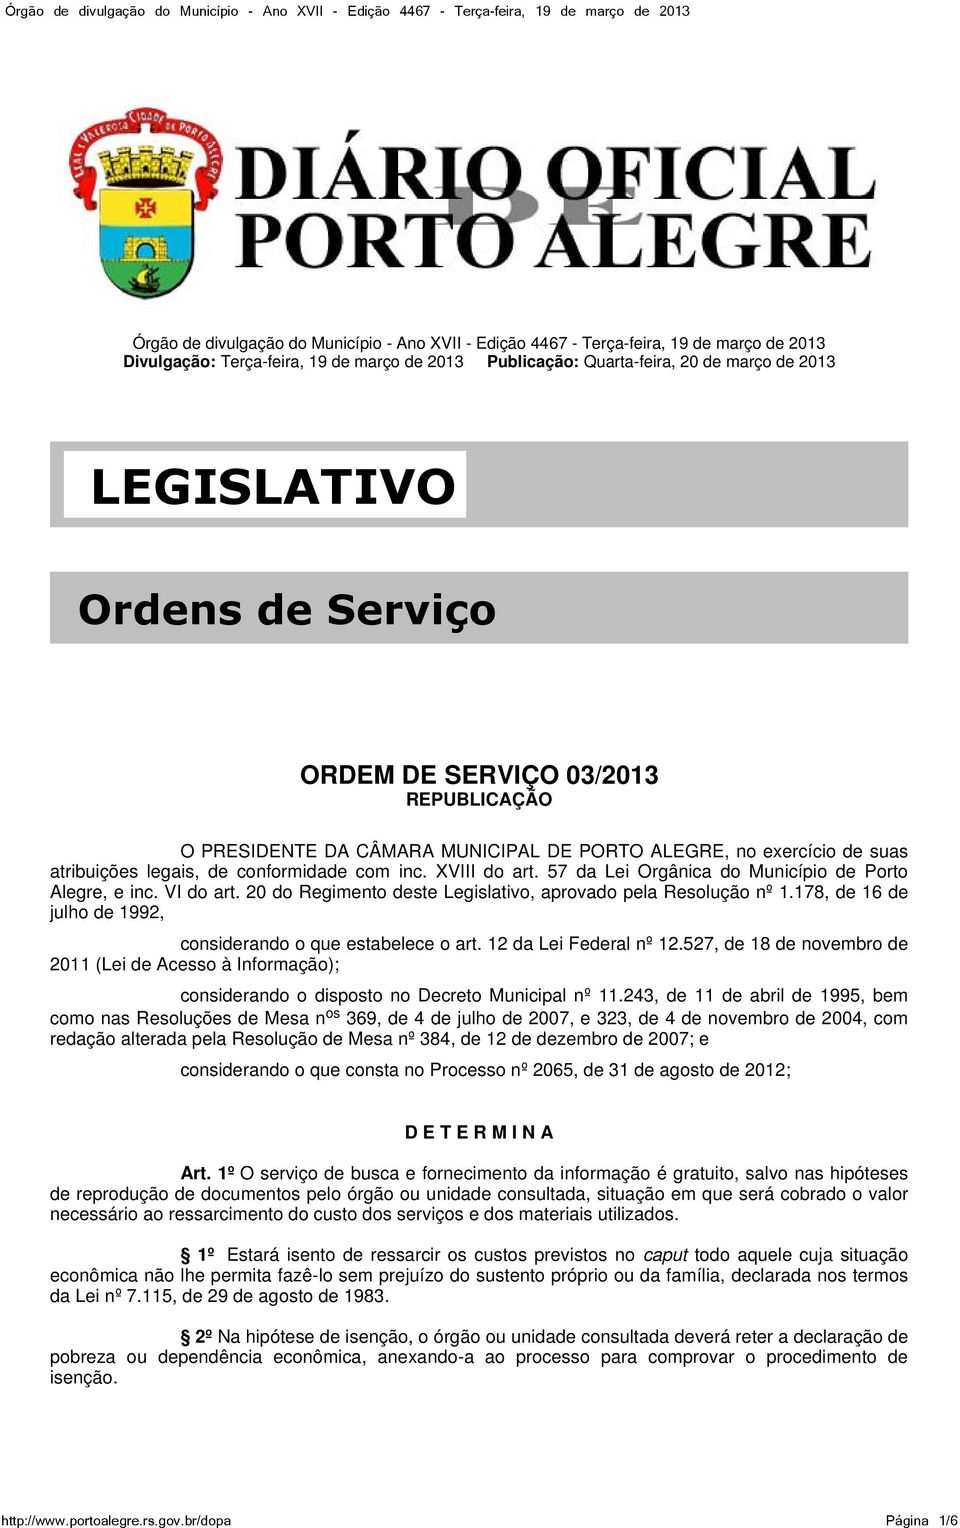 57 da Lei Orgânica do Município de Porto Alegre, e inc. VI do art. 20 do Regimento deste Legislativo, aprovado pela Resolução nº 1.178, de 16 de julho de 1992, considerando o que estabelece o art.